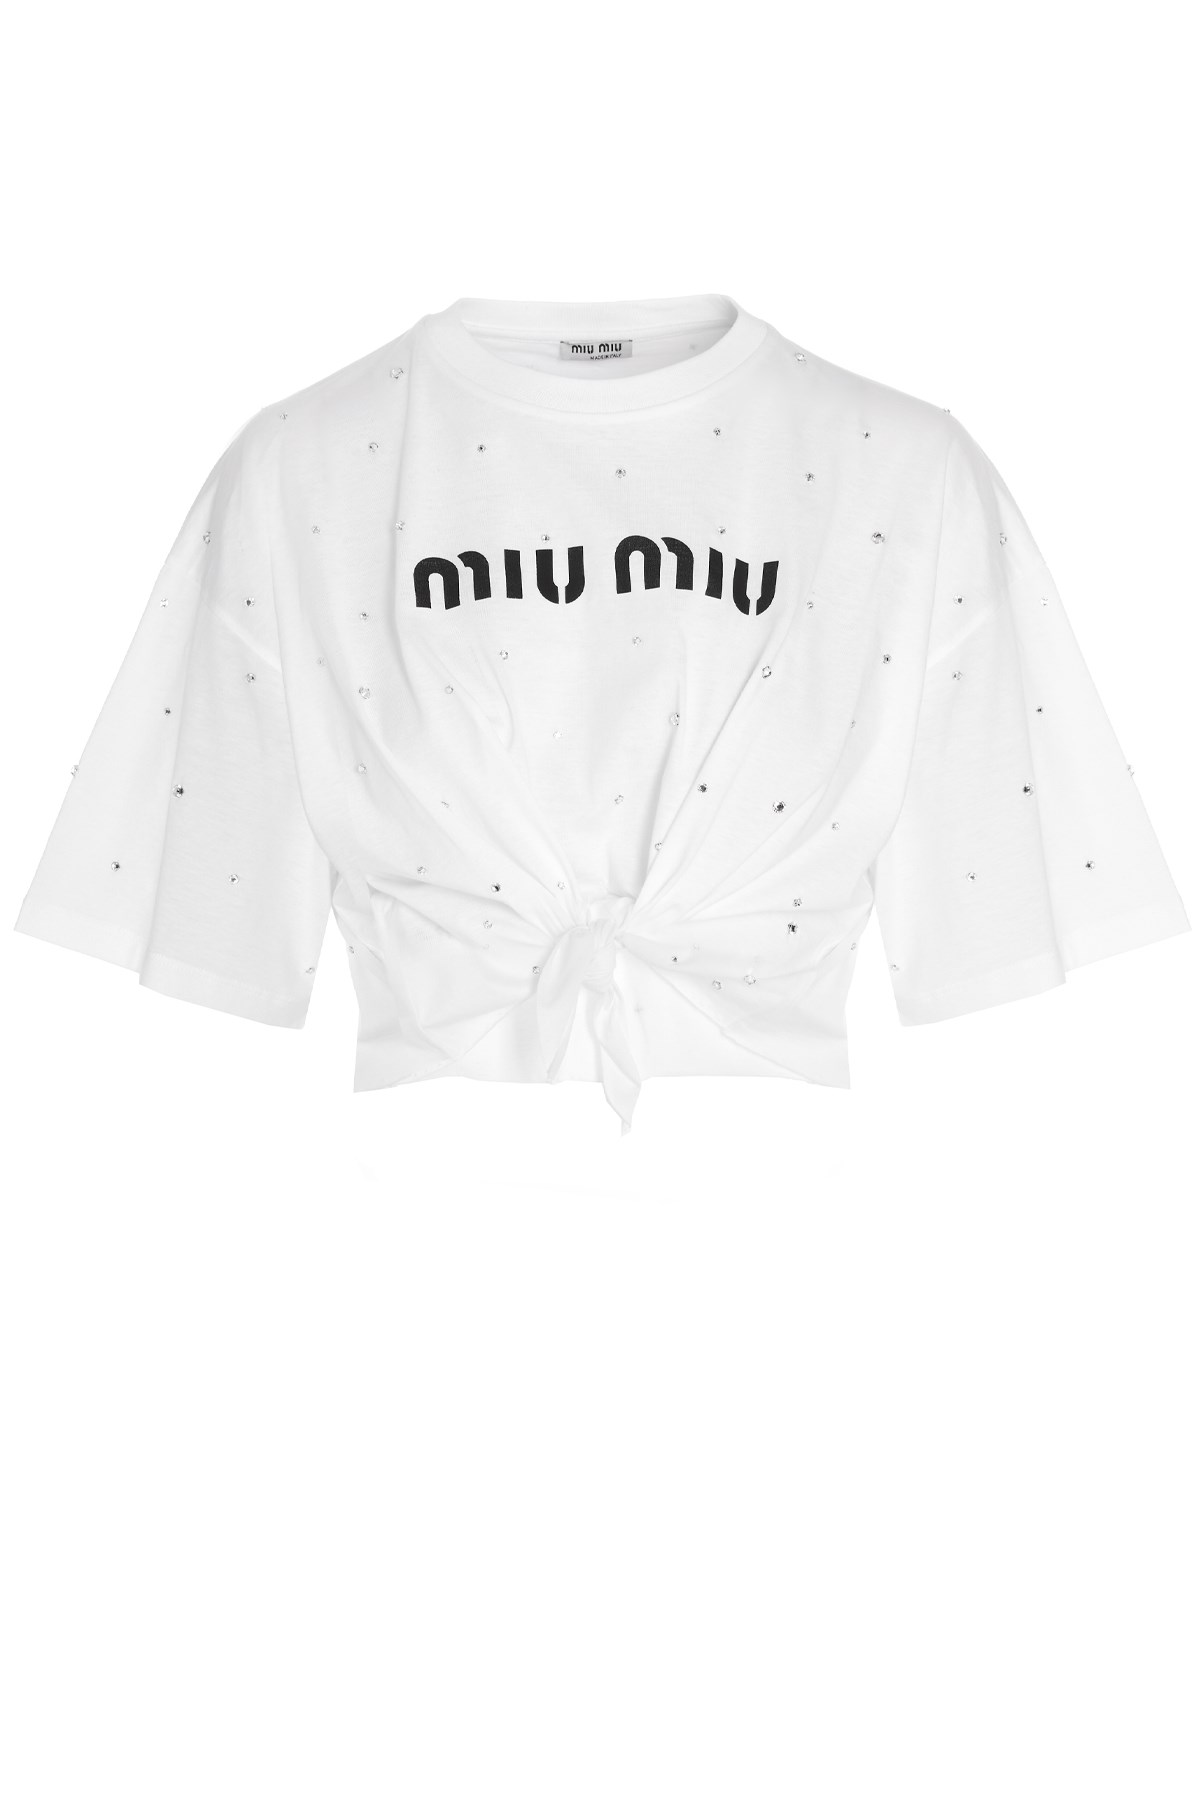 MIU MIU T-Shirt Mit Pailletten-Applikationen